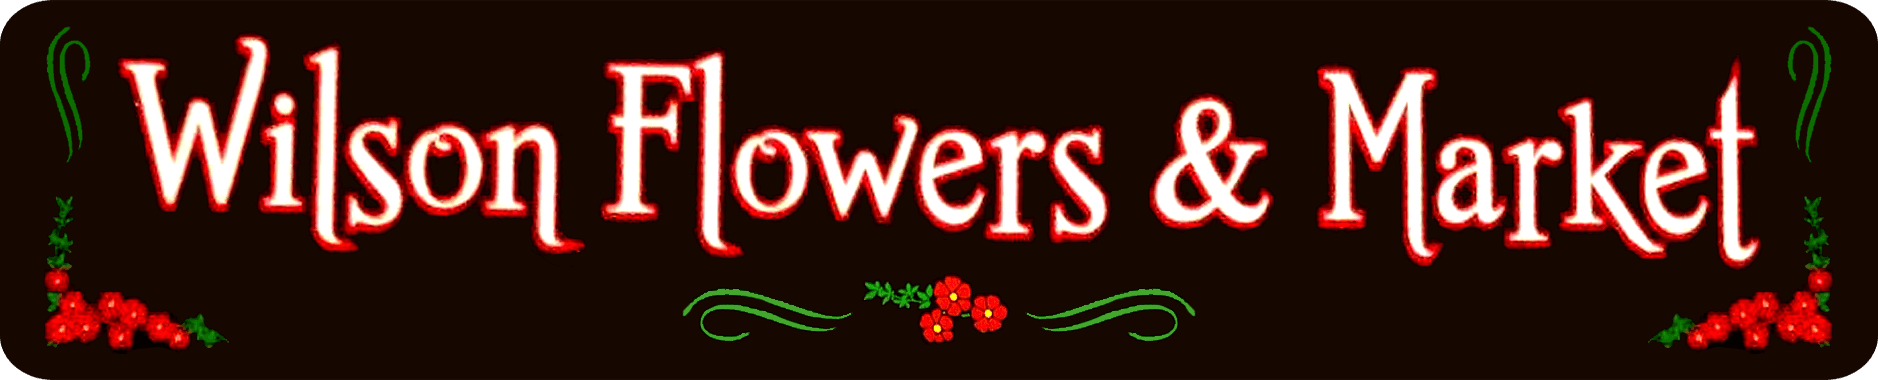 Wilson Flowers & Market logo